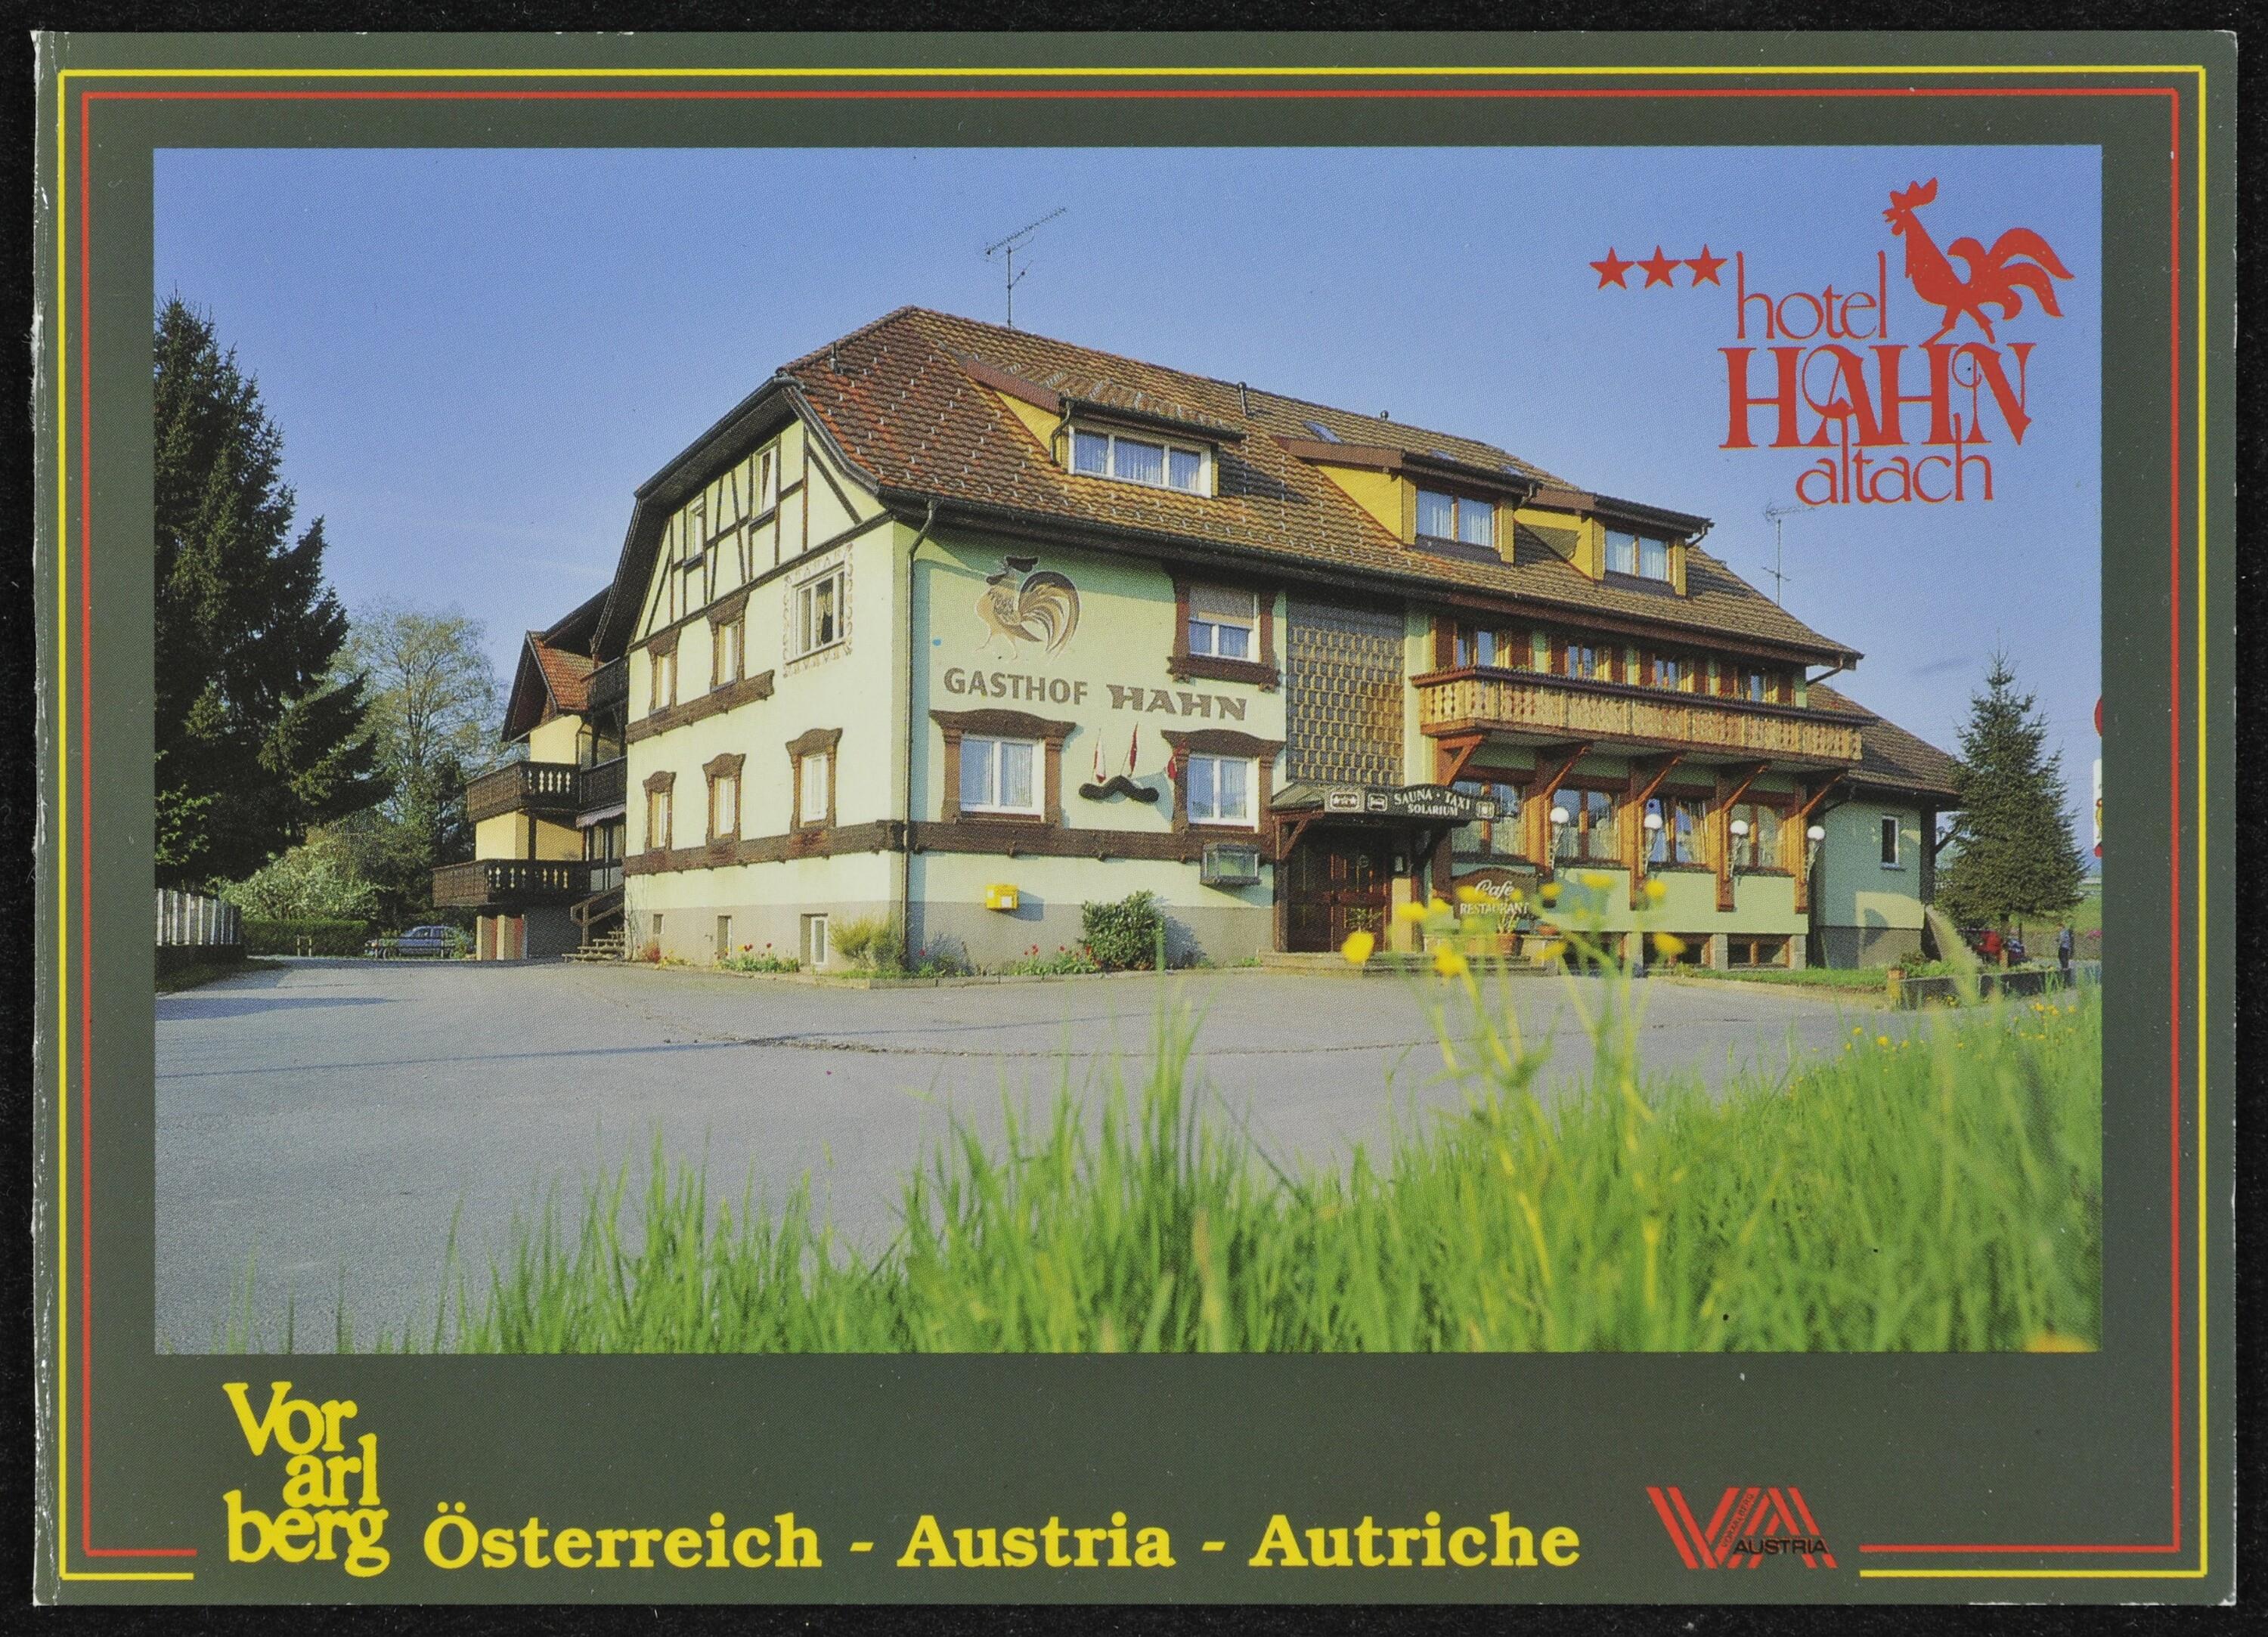 hotel Hahn altach Vorarlberg Österreich - Austria - Autriche VA></div>


    <hr>
    <div class=